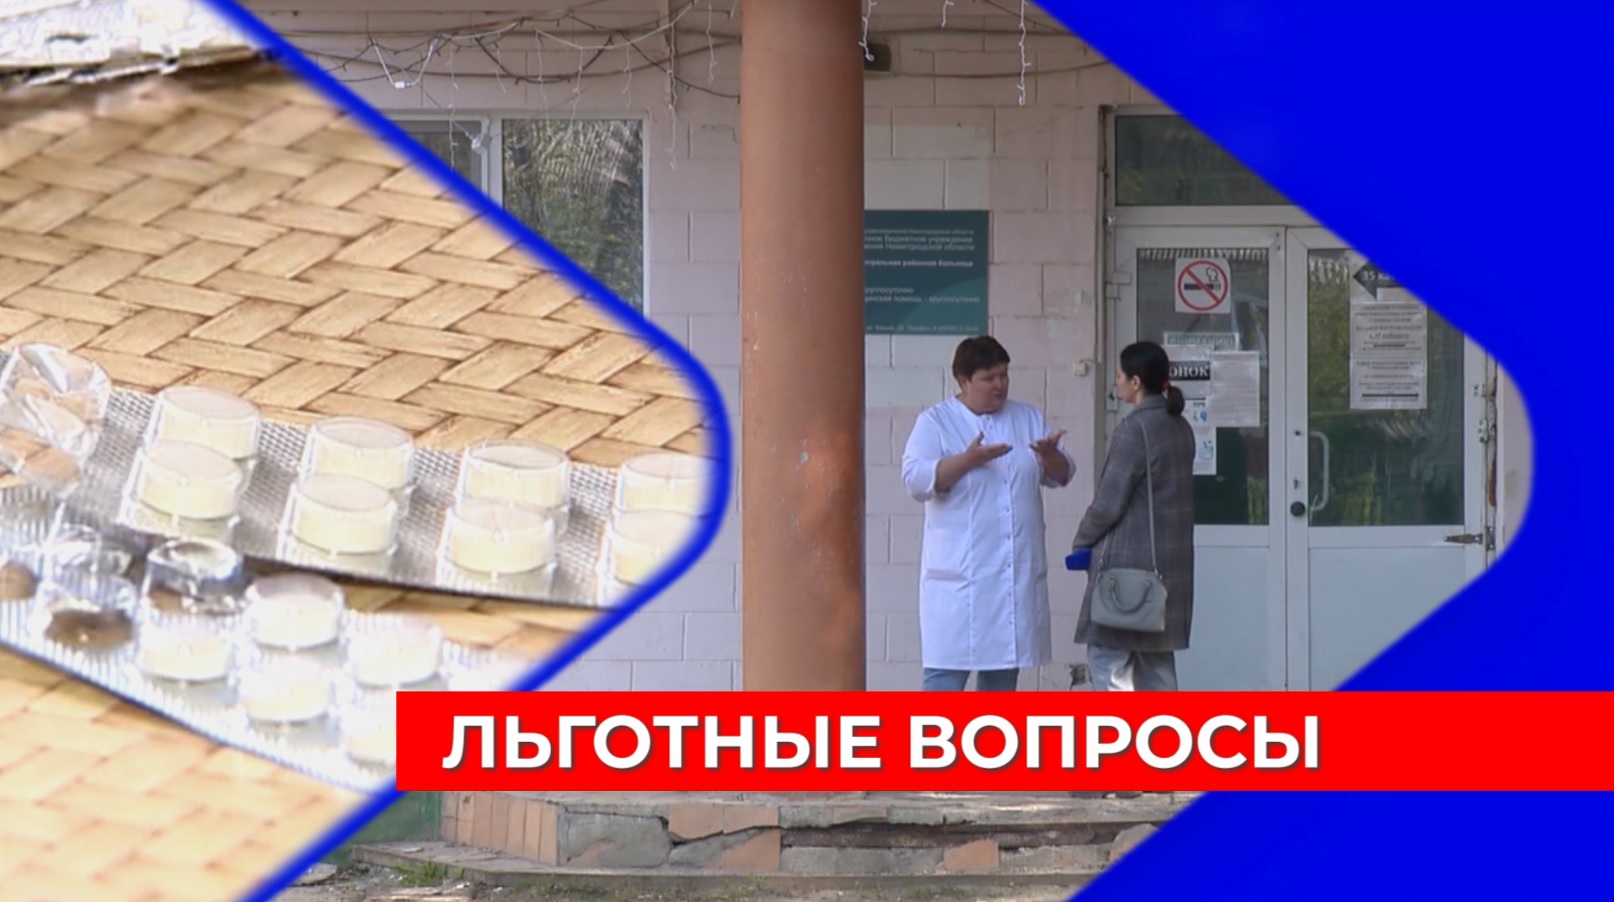 Ситуация с выдачей льготных лекарств вызвала вопросы у жителей Нижегородской области